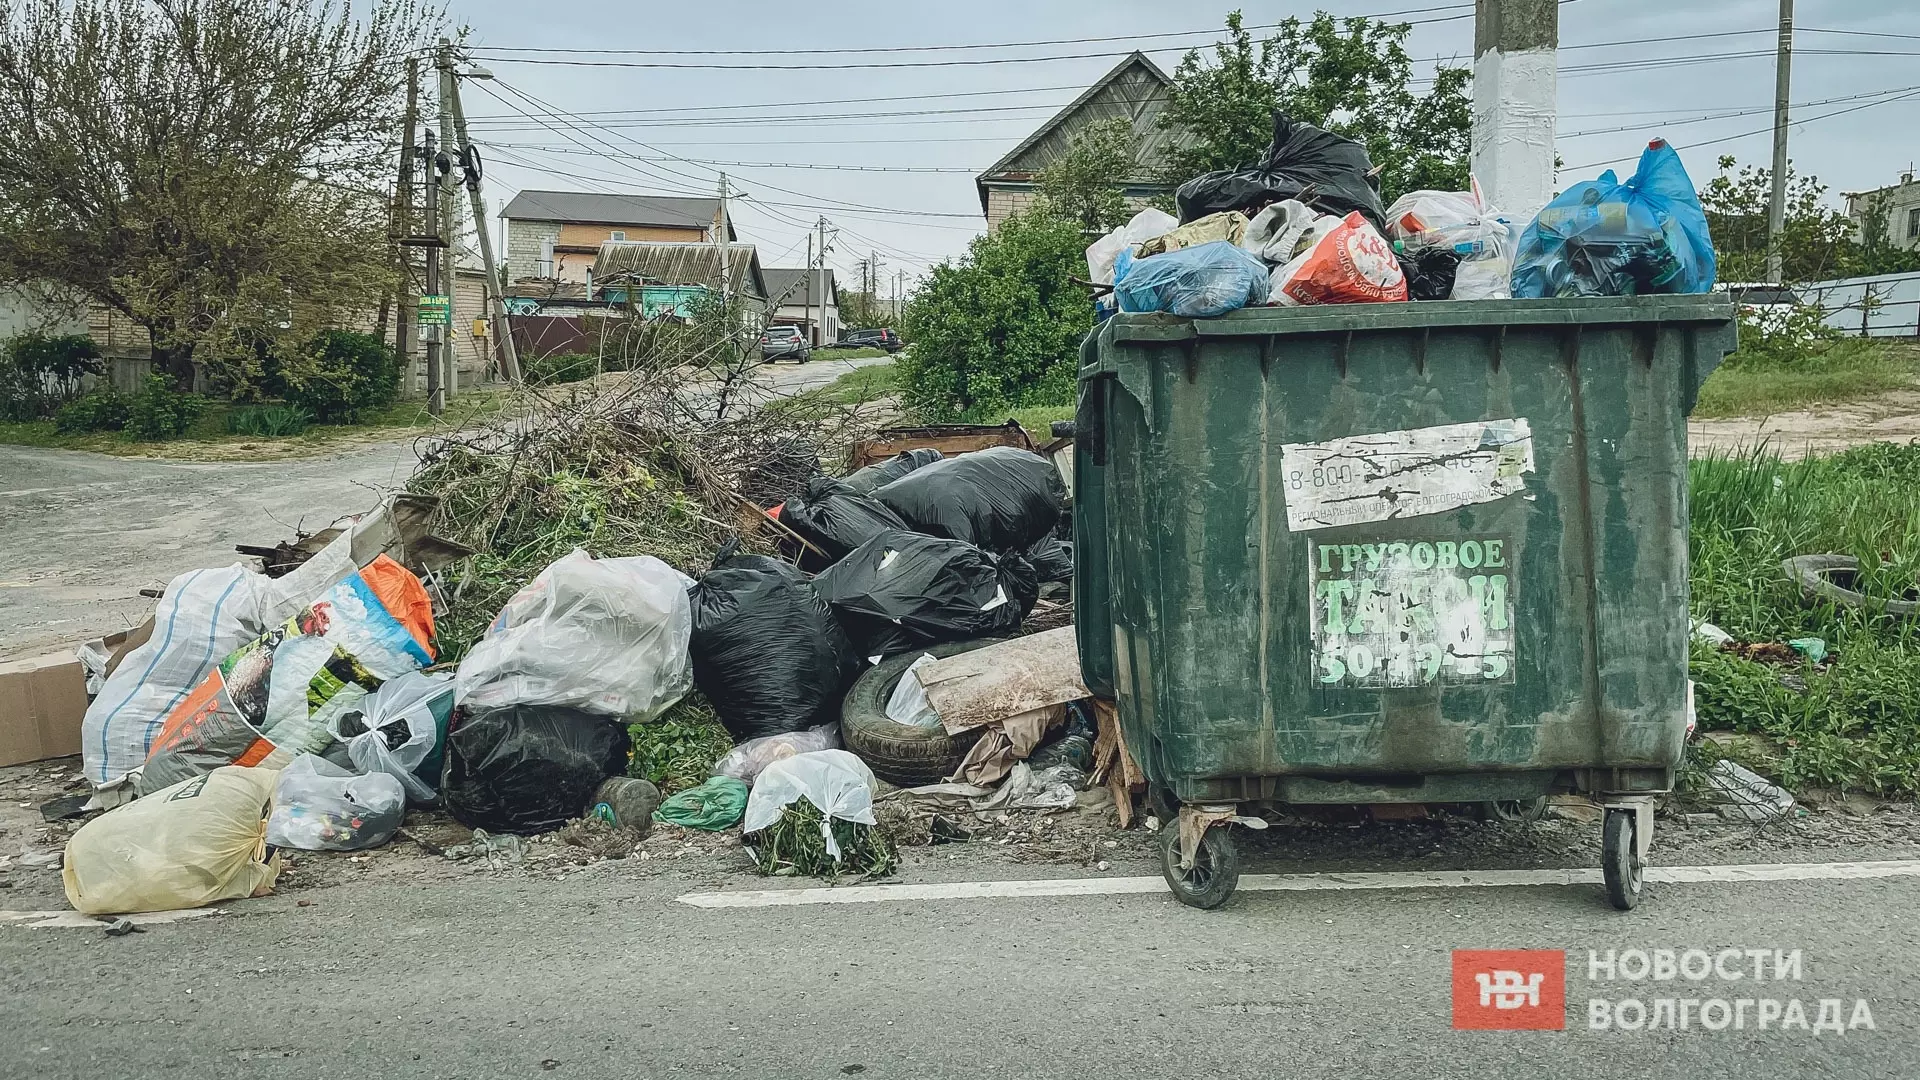 Бизнесмены из Волгограда незаконно сбрасывали мусор на контейнерные площадки